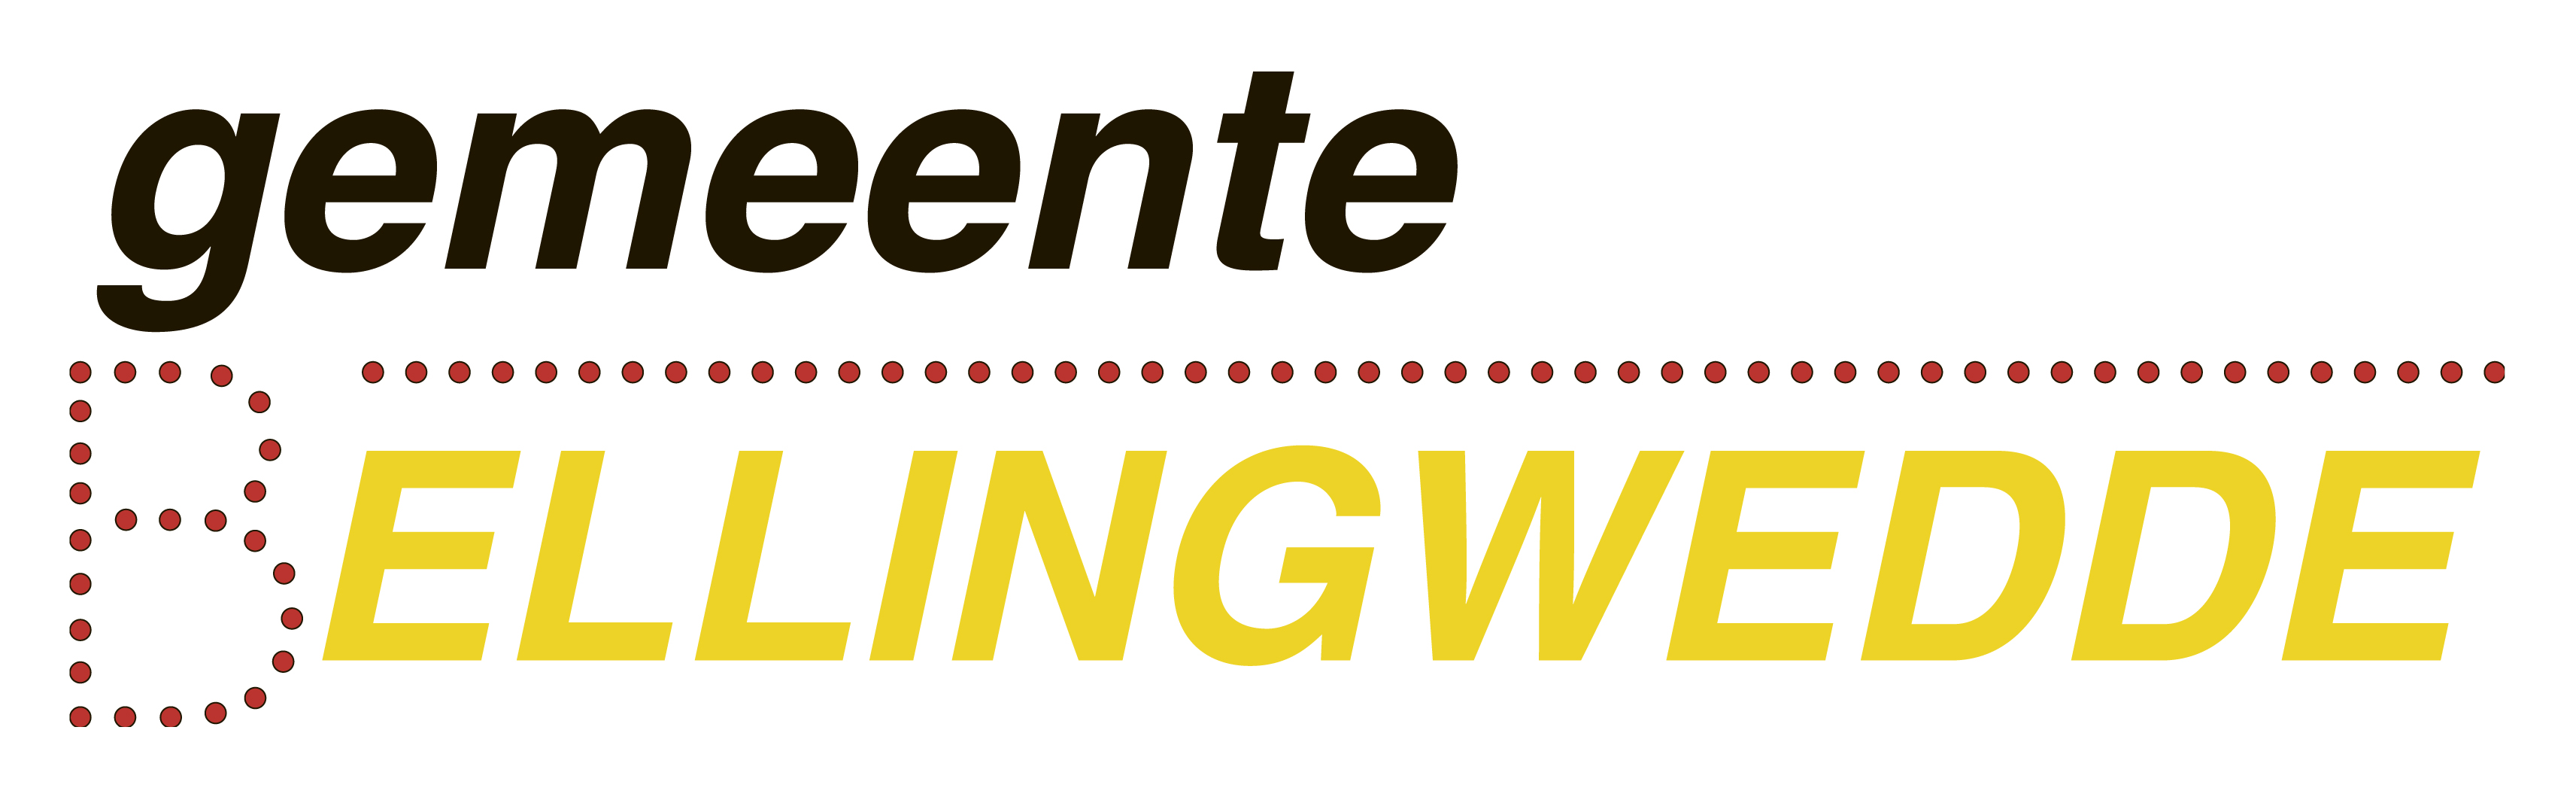 Logo Bellingwedde